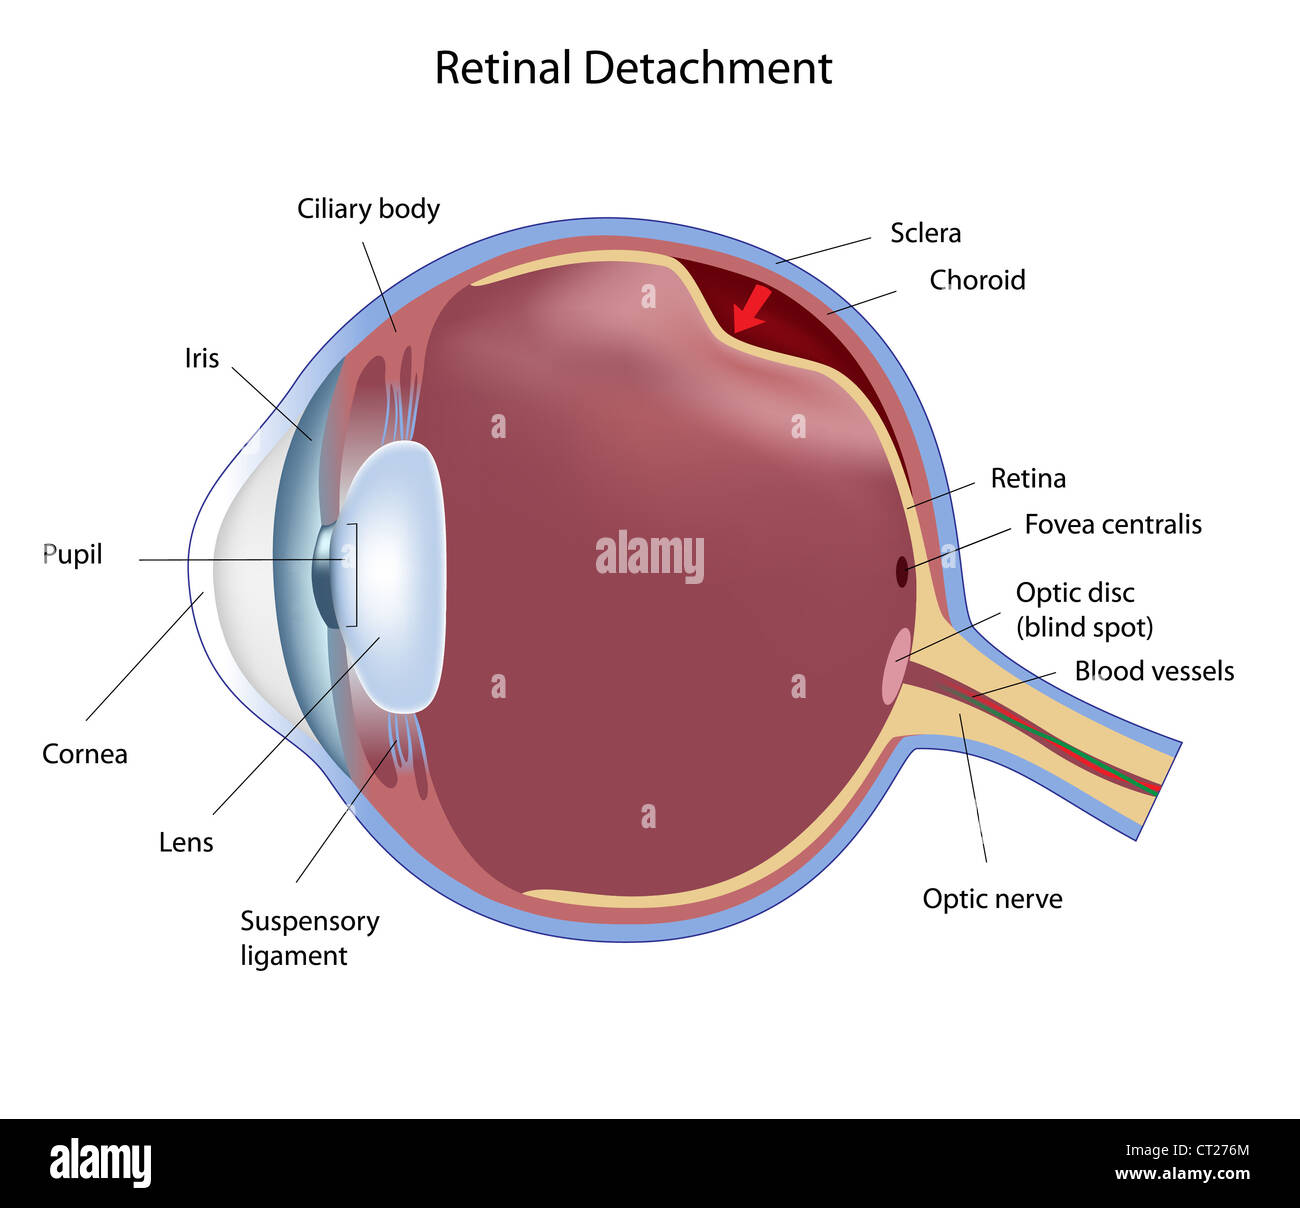 Eye disease retinal detachment Stock Photo